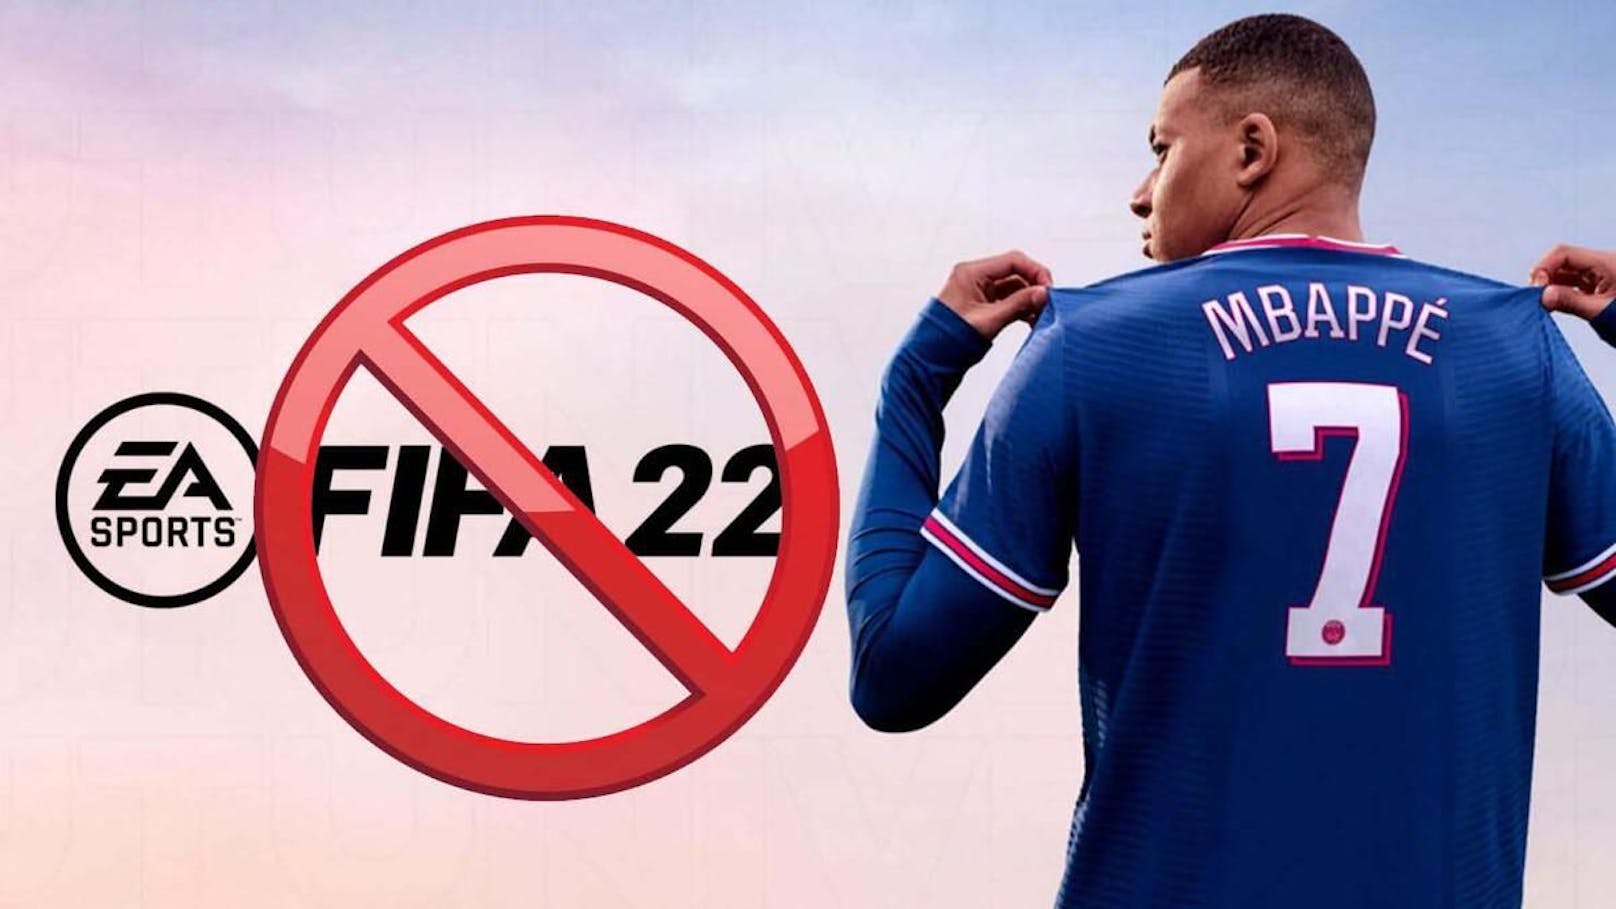 Wird aus "FIFA 22" in Zukunft EA Football? Der Entwickler überlegt sich den Namen zu ändern. Der Grund: Die FIFA möchte für ihre Lizenzen und Namensrechte eine Milliarde US-Dollar.